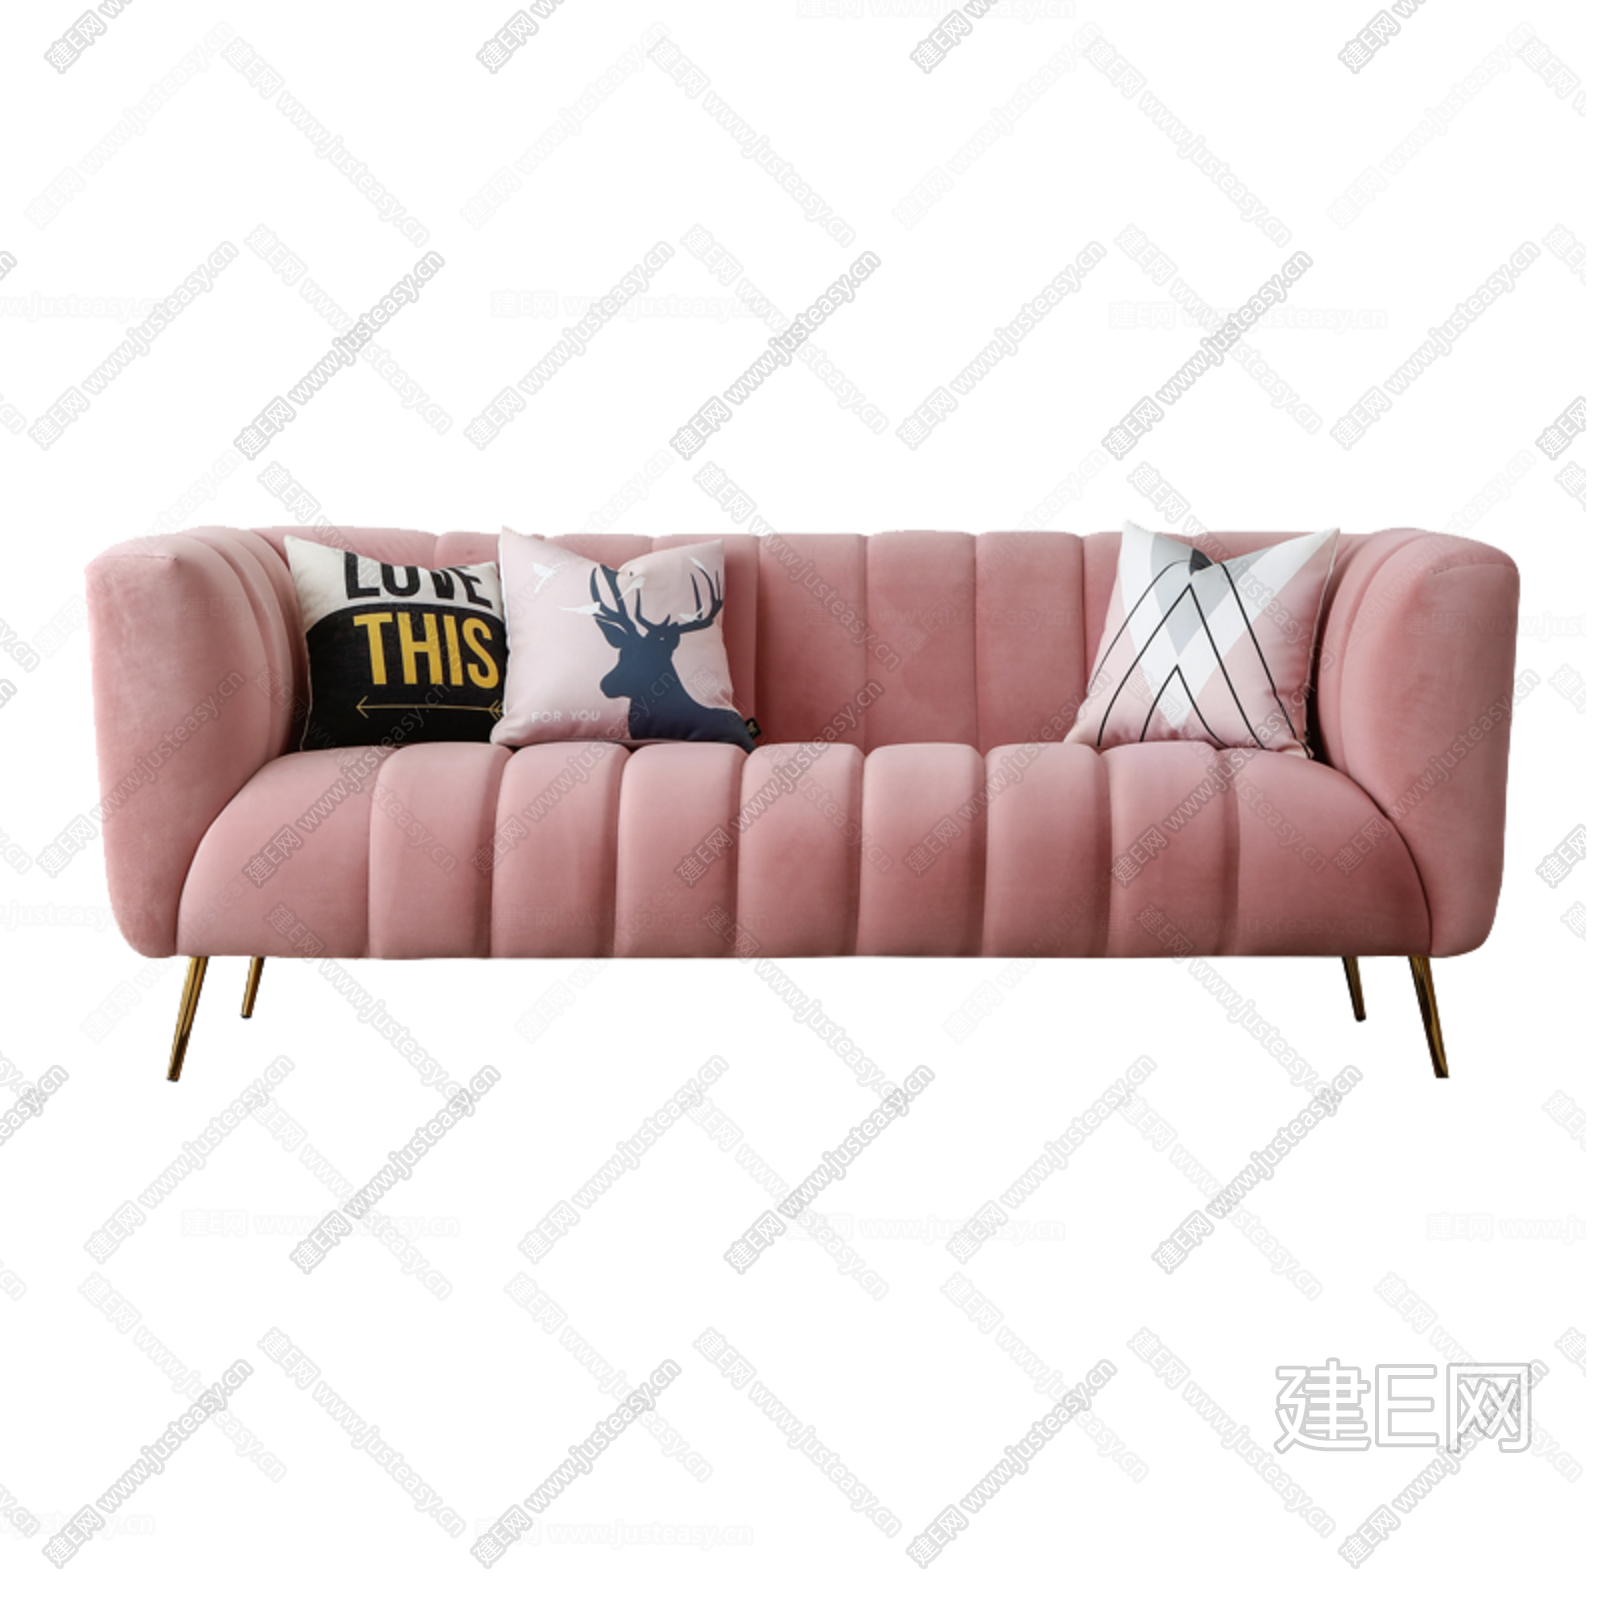 世纪中叶频道簇绒天鹅绒沙发沙发粉色丝绒现代客厅家具armoina2015 Moderndeco - Buy 粉色沙发,天鹅绒沙发,丝绒沙发 Product on Alibaba.com